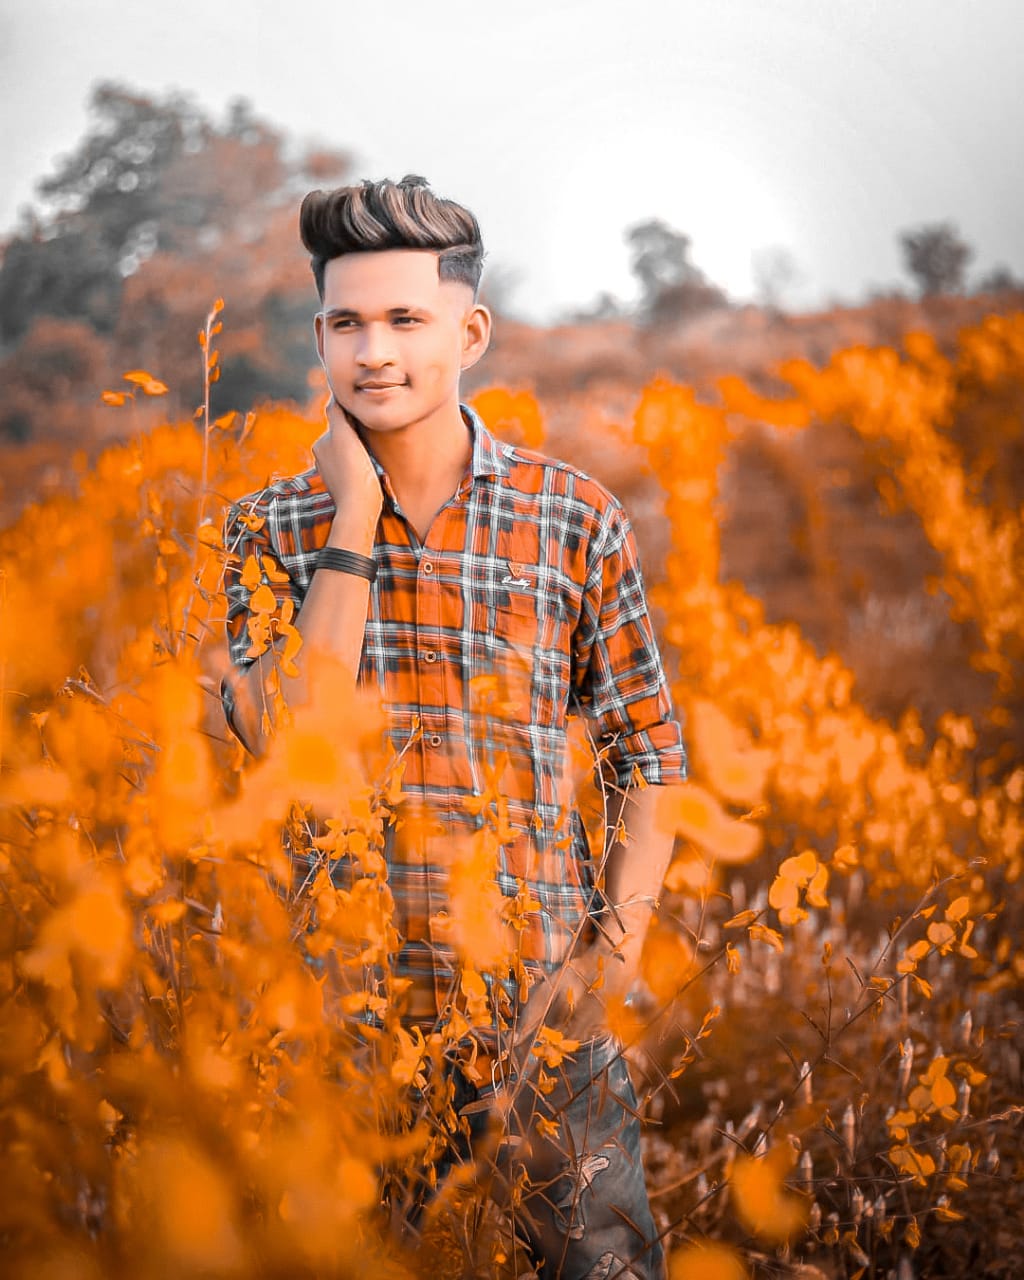 Bộ chỉnh màu Snapseed Moody Orange Preset sẽ giúp tăng cường tính chuyên nghiệp cho những bức ảnh của bạn. Hãy sử dụng nó ngay bây giờ để tạo ra những hình ảnh độc đáo và ấn tượng.